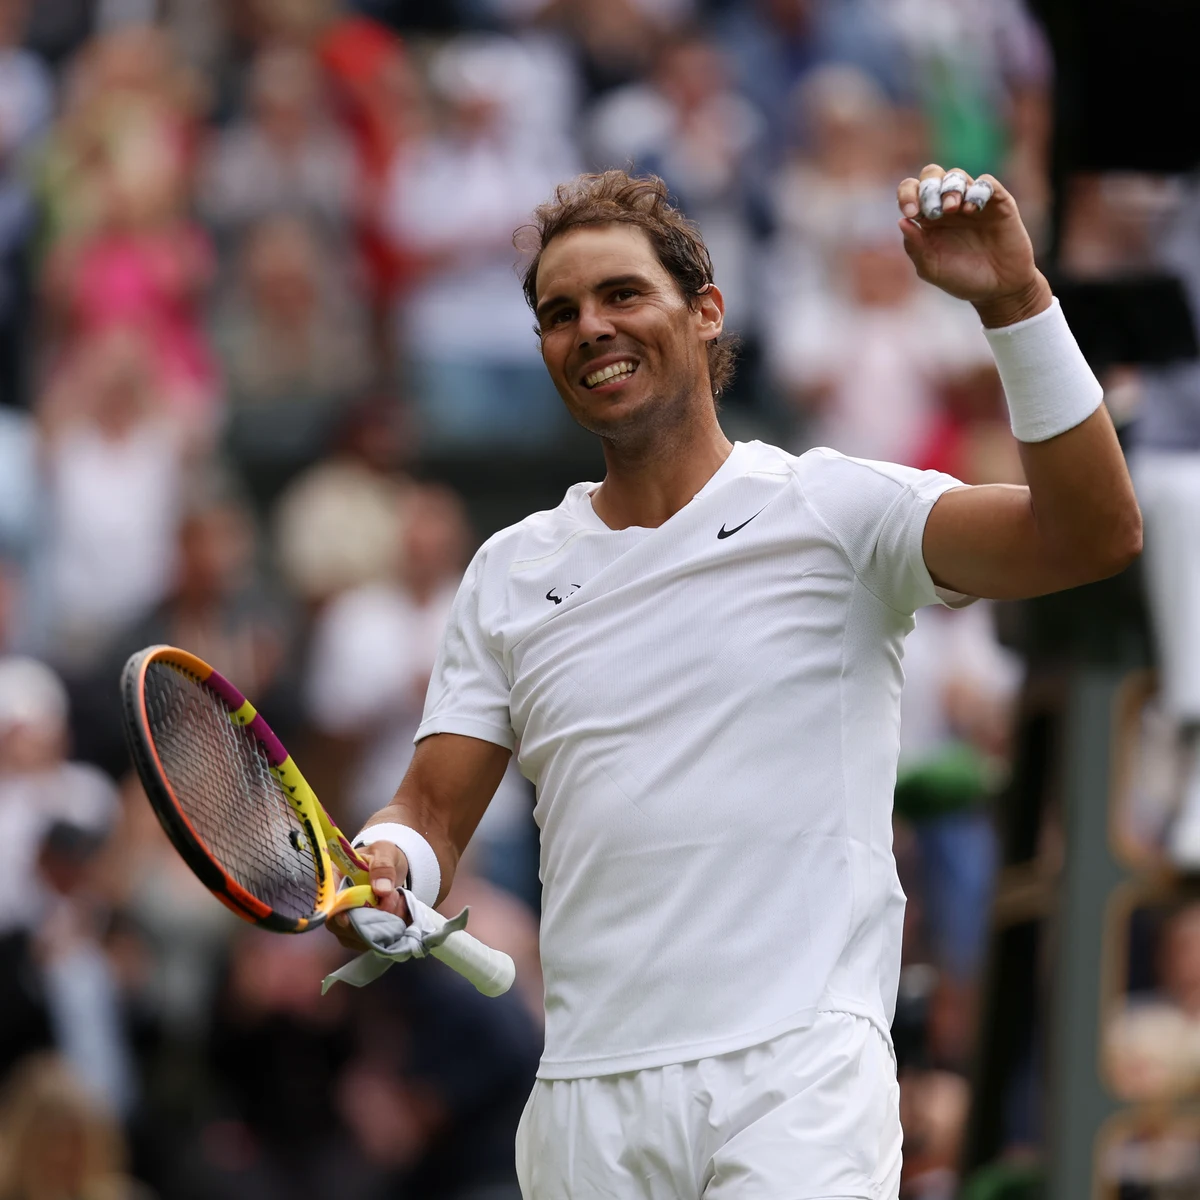 Nadal - Francisco Cerúndolo: Resultado y resumen del partido tenis del Campeonato de Wimbledon, en directo